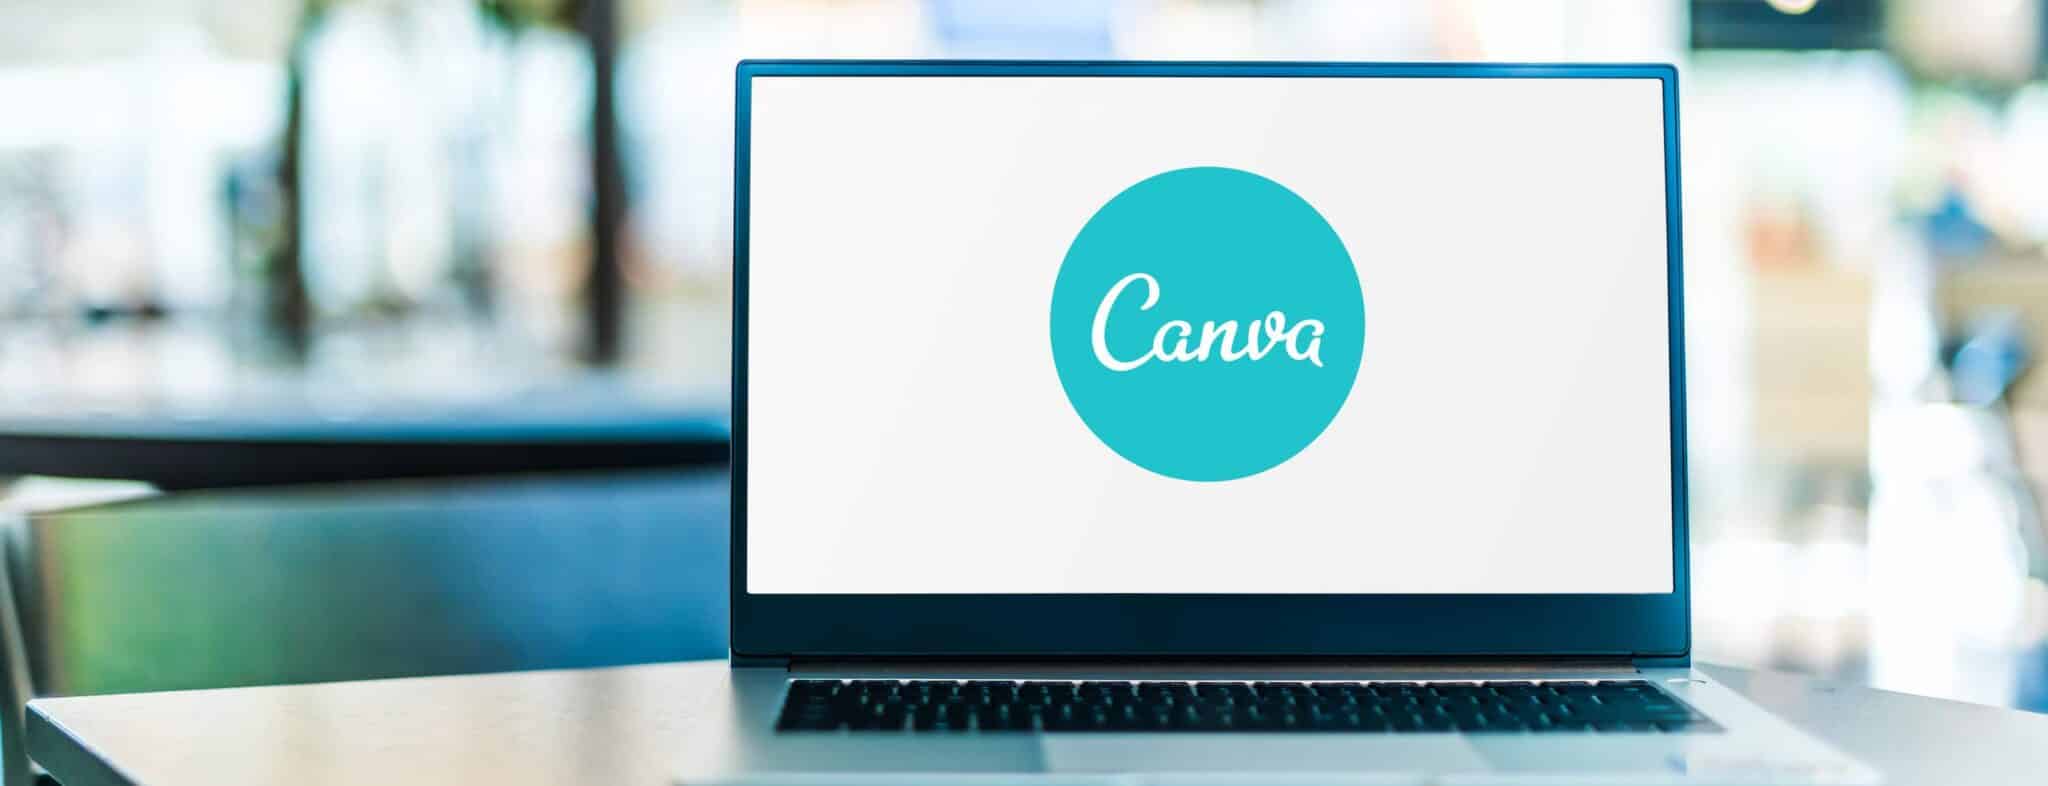 Comment réaliser des visuels impactants sur Canva ?